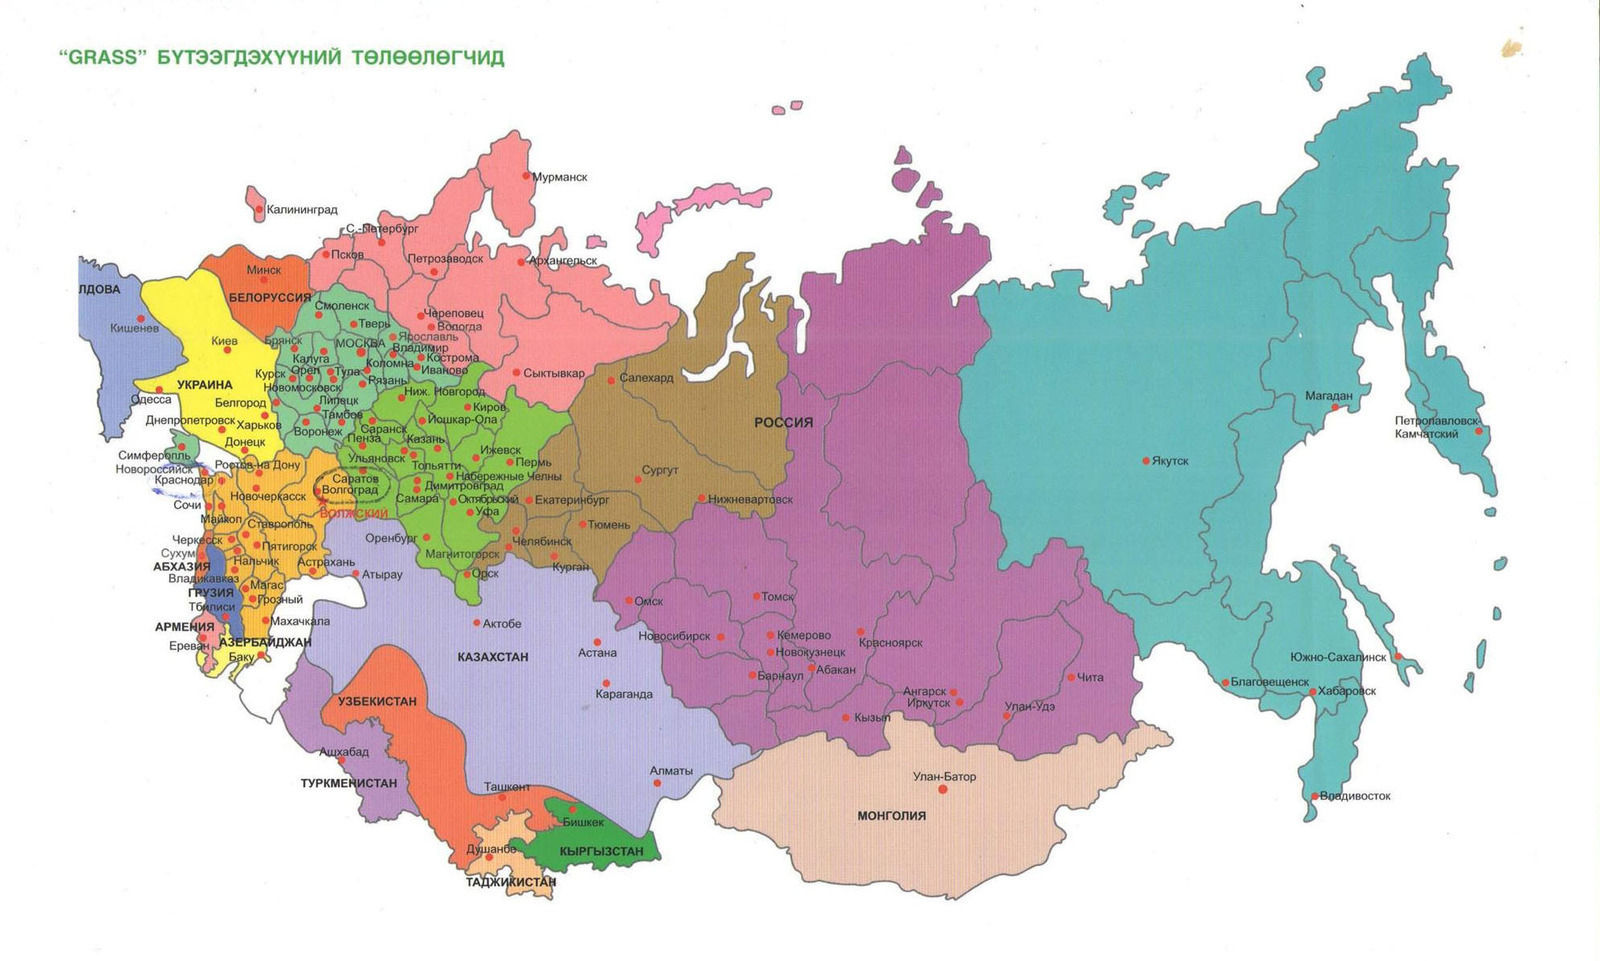 Регион русский язык 2023